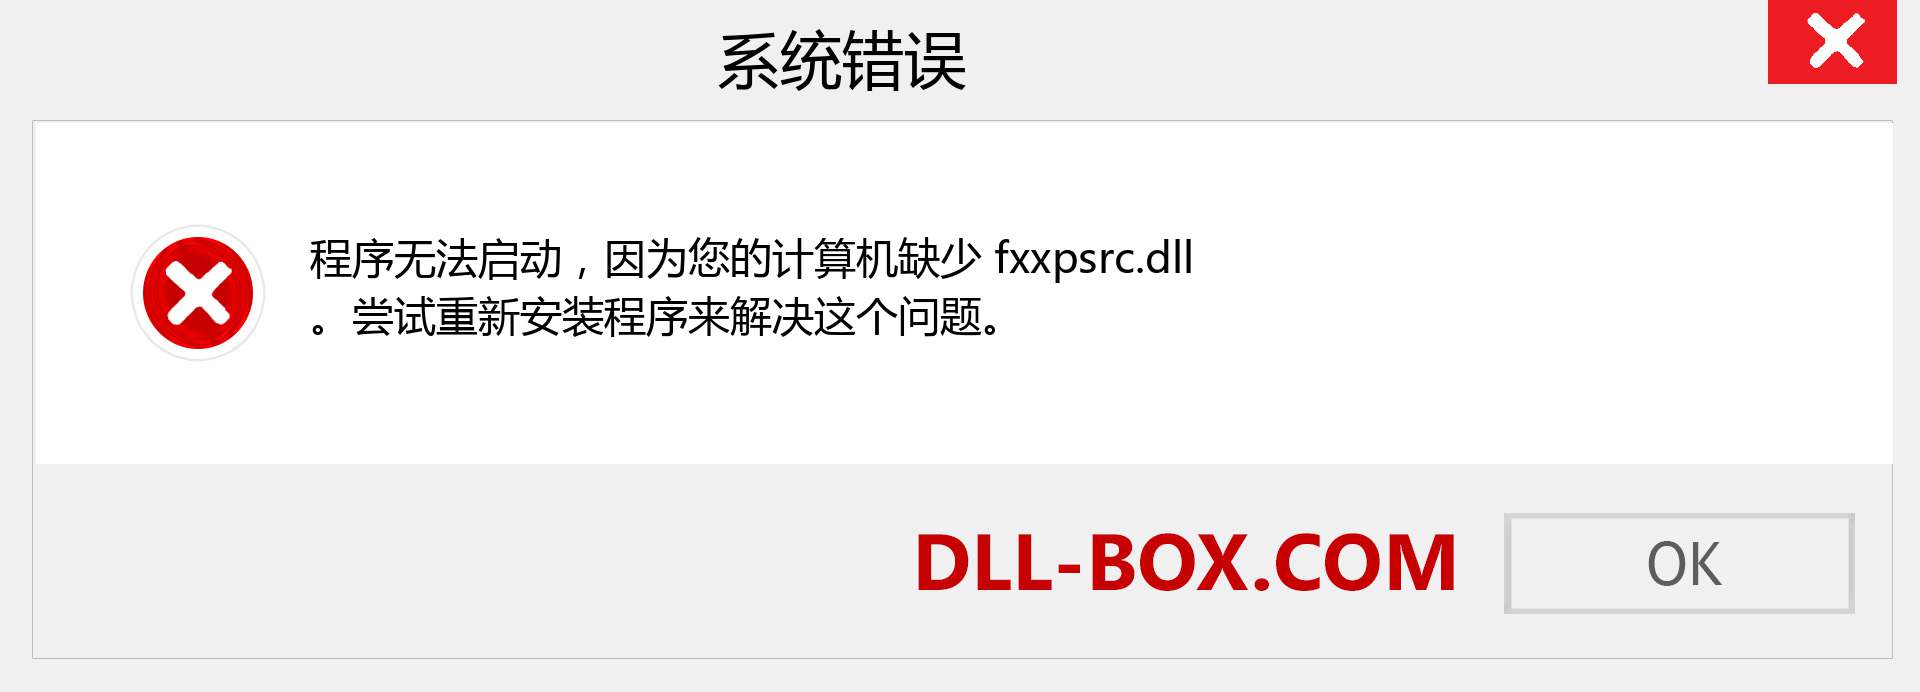 fxxpsrc.dll 文件丢失？。 适用于 Windows 7、8、10 的下载 - 修复 Windows、照片、图像上的 fxxpsrc dll 丢失错误